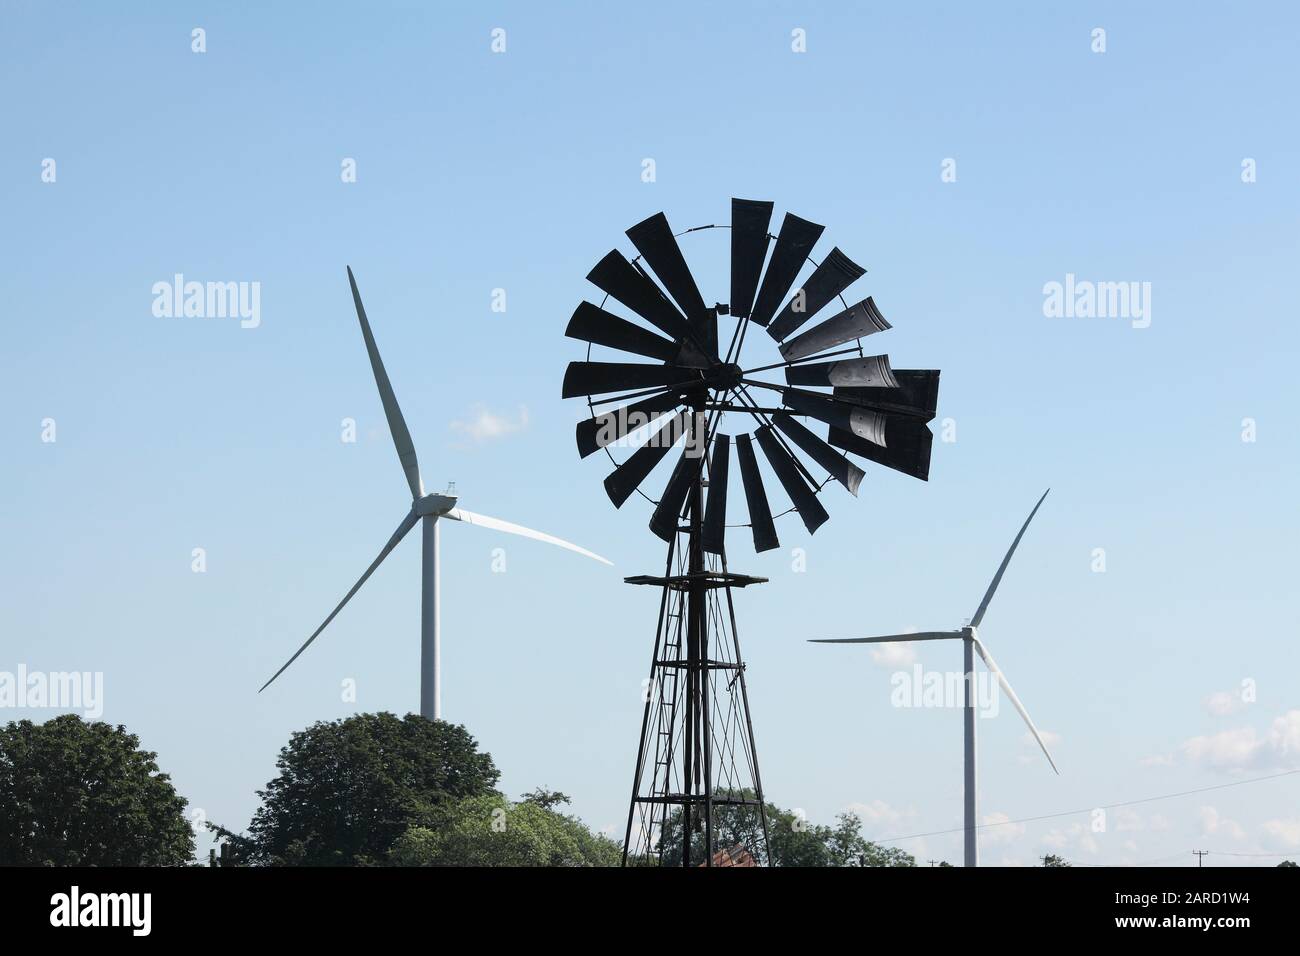 Vecchia e nuova tecnologia per sfruttare la potenza del vento: Una vecchia pompa eolica, disutilizzata e a più vanazione, per raccogliere l'acqua fiancheggiata da moderne turbine eoliche. Foto Stock